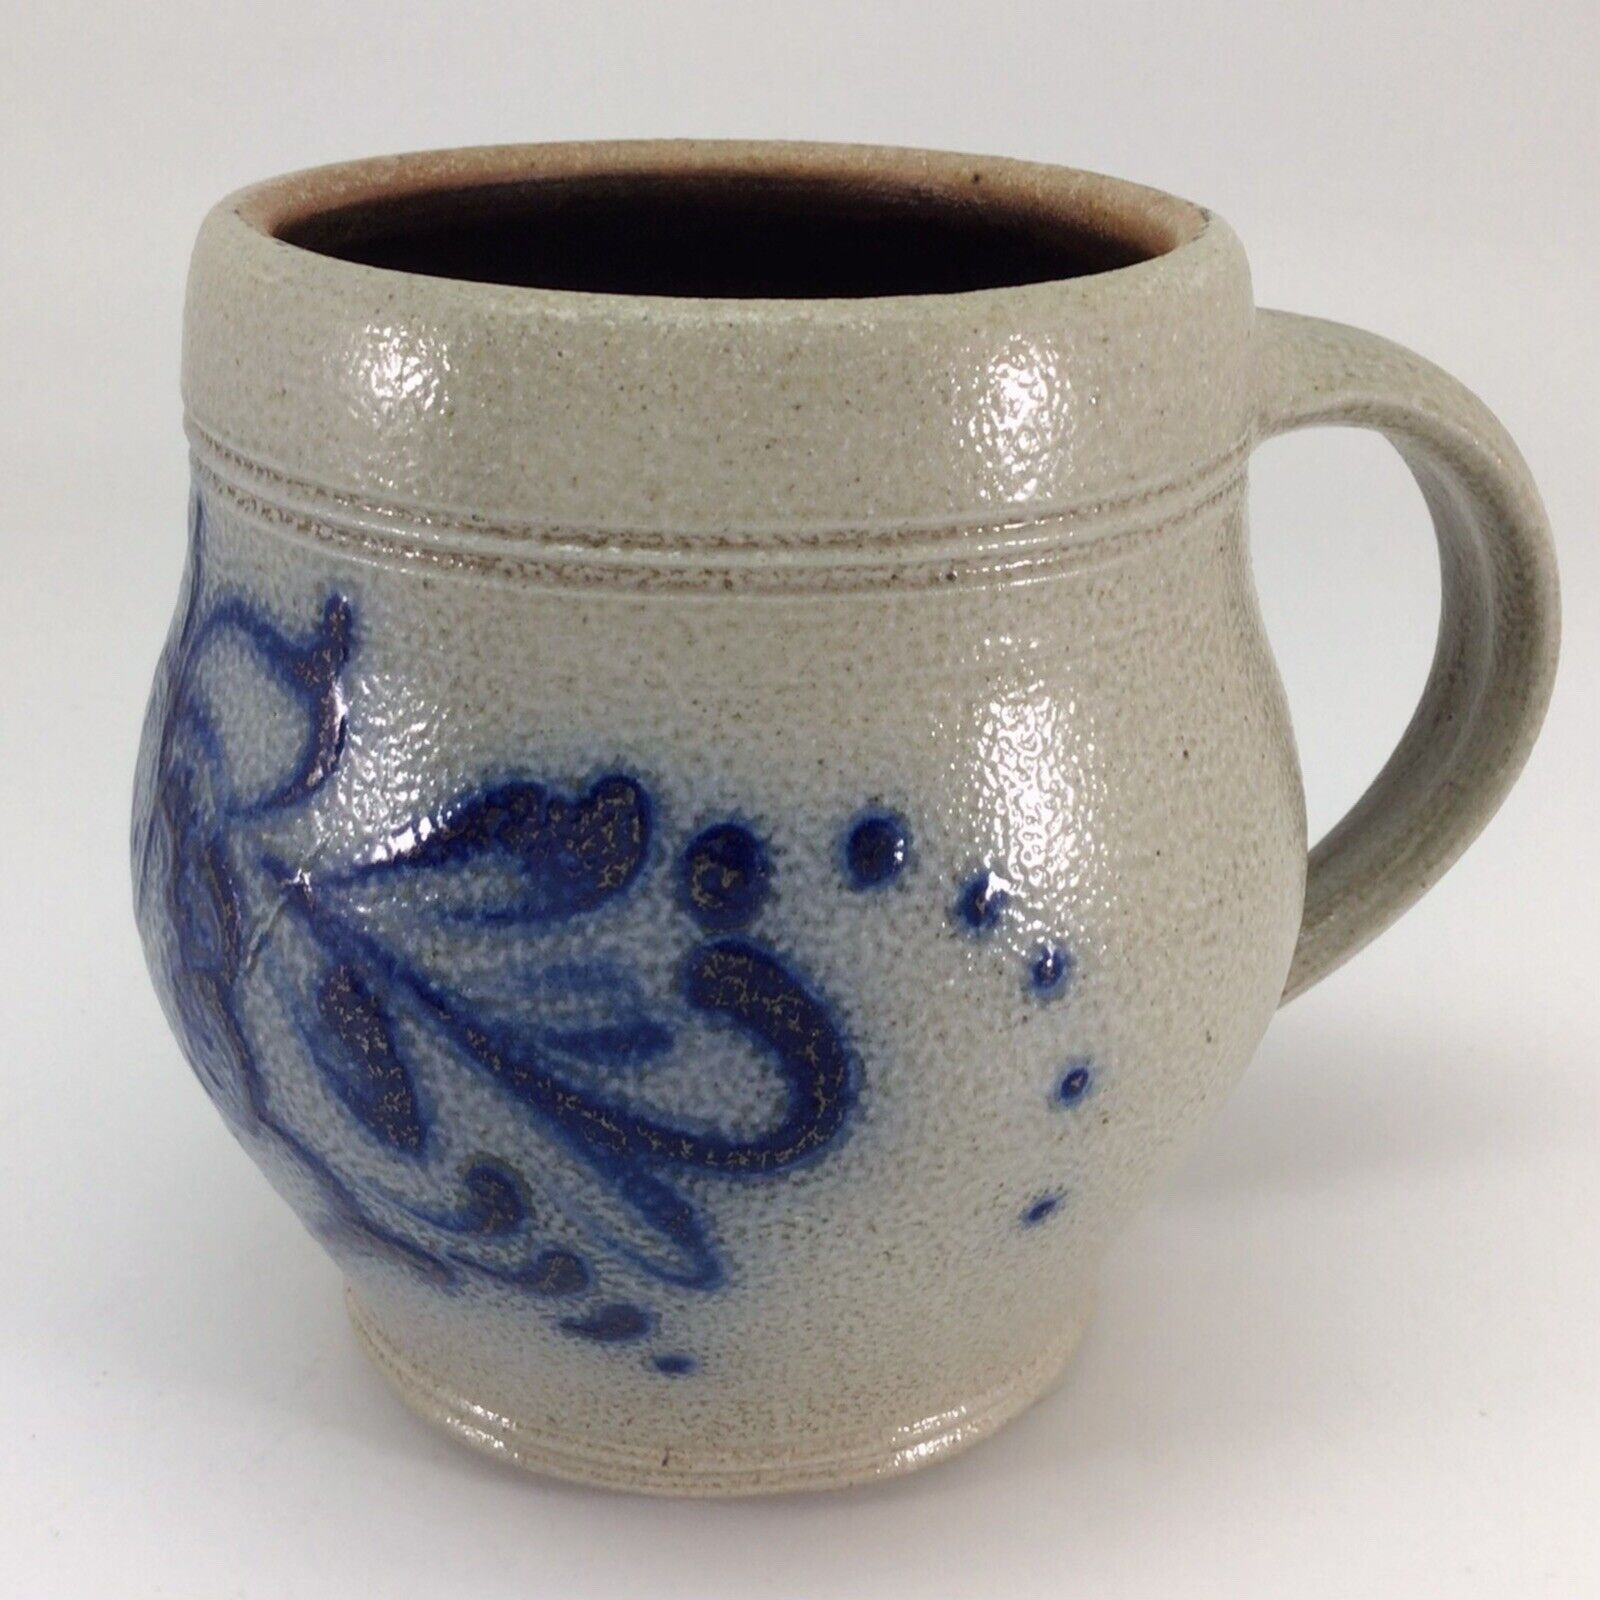 Wisconsin Pottery Mug Floral Salt Glazed J. Huntley 16 oz 1995 Vintage